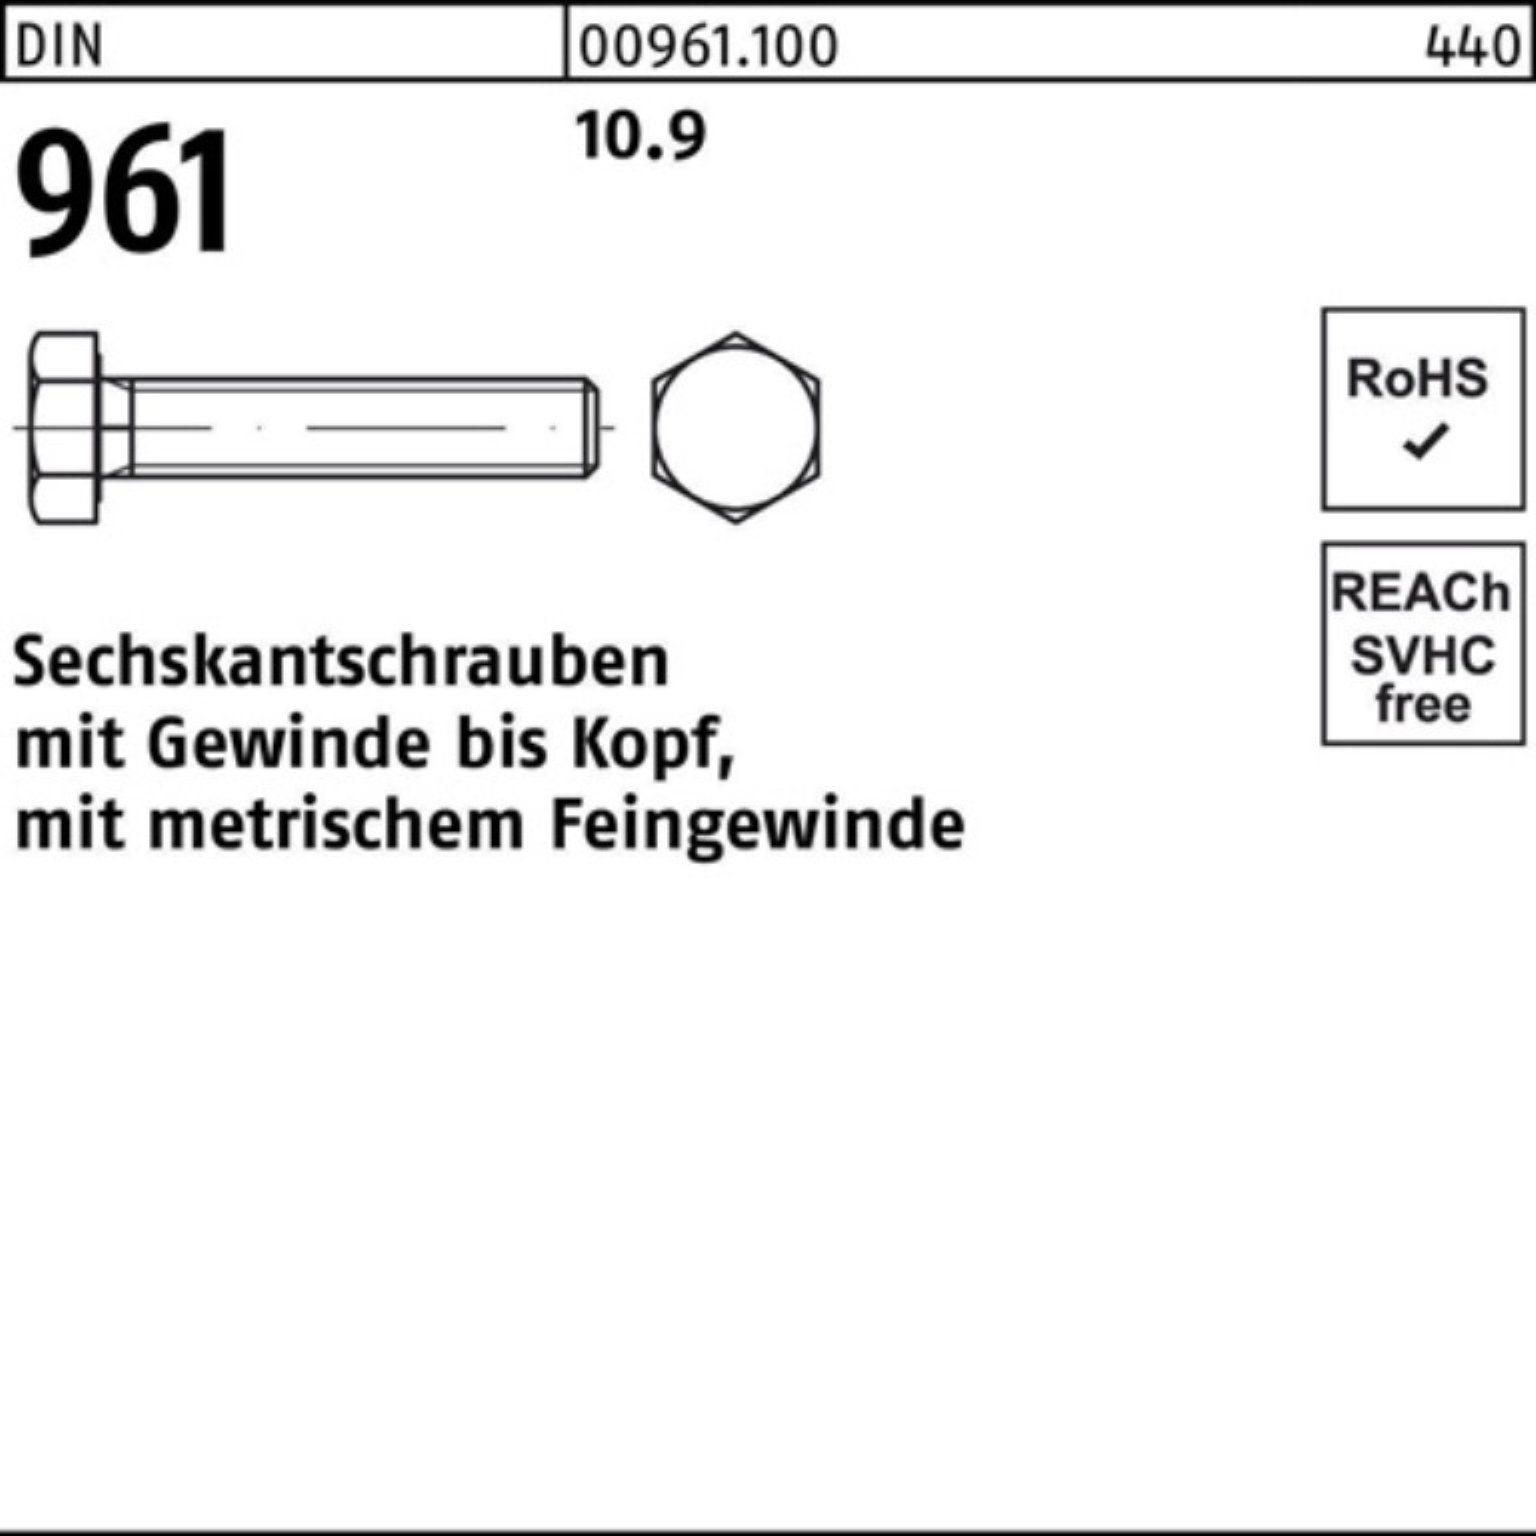 Stück Pack Reyher Sechskantschraube Sechskantschraube VG 10.9 961 50 DIN 100er M12x1,5x120 DIN